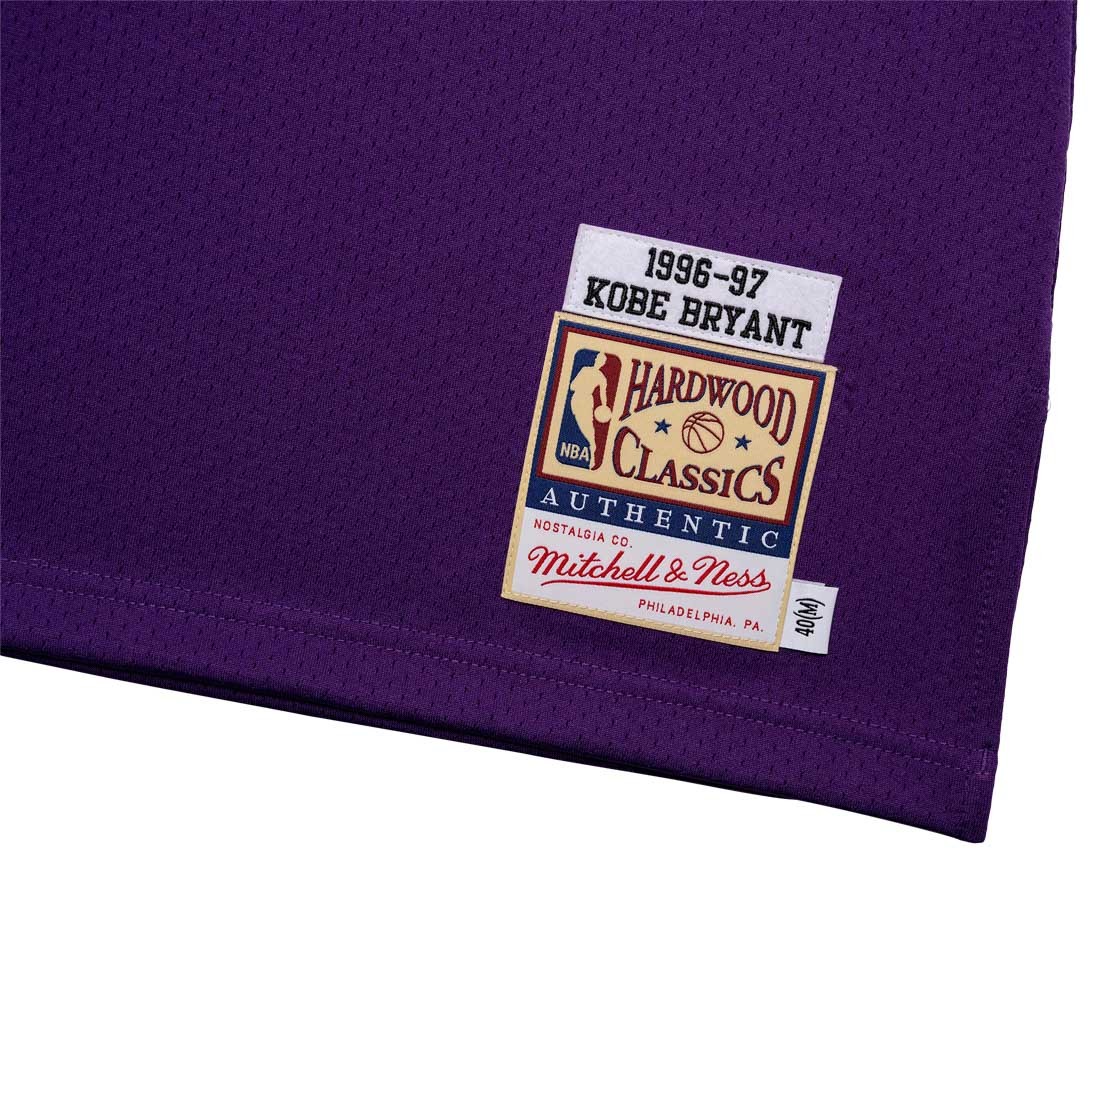 CLOT X Mitchell & Ness Kobe Bryant Knit Jersey Purple/Yellow Men's - US